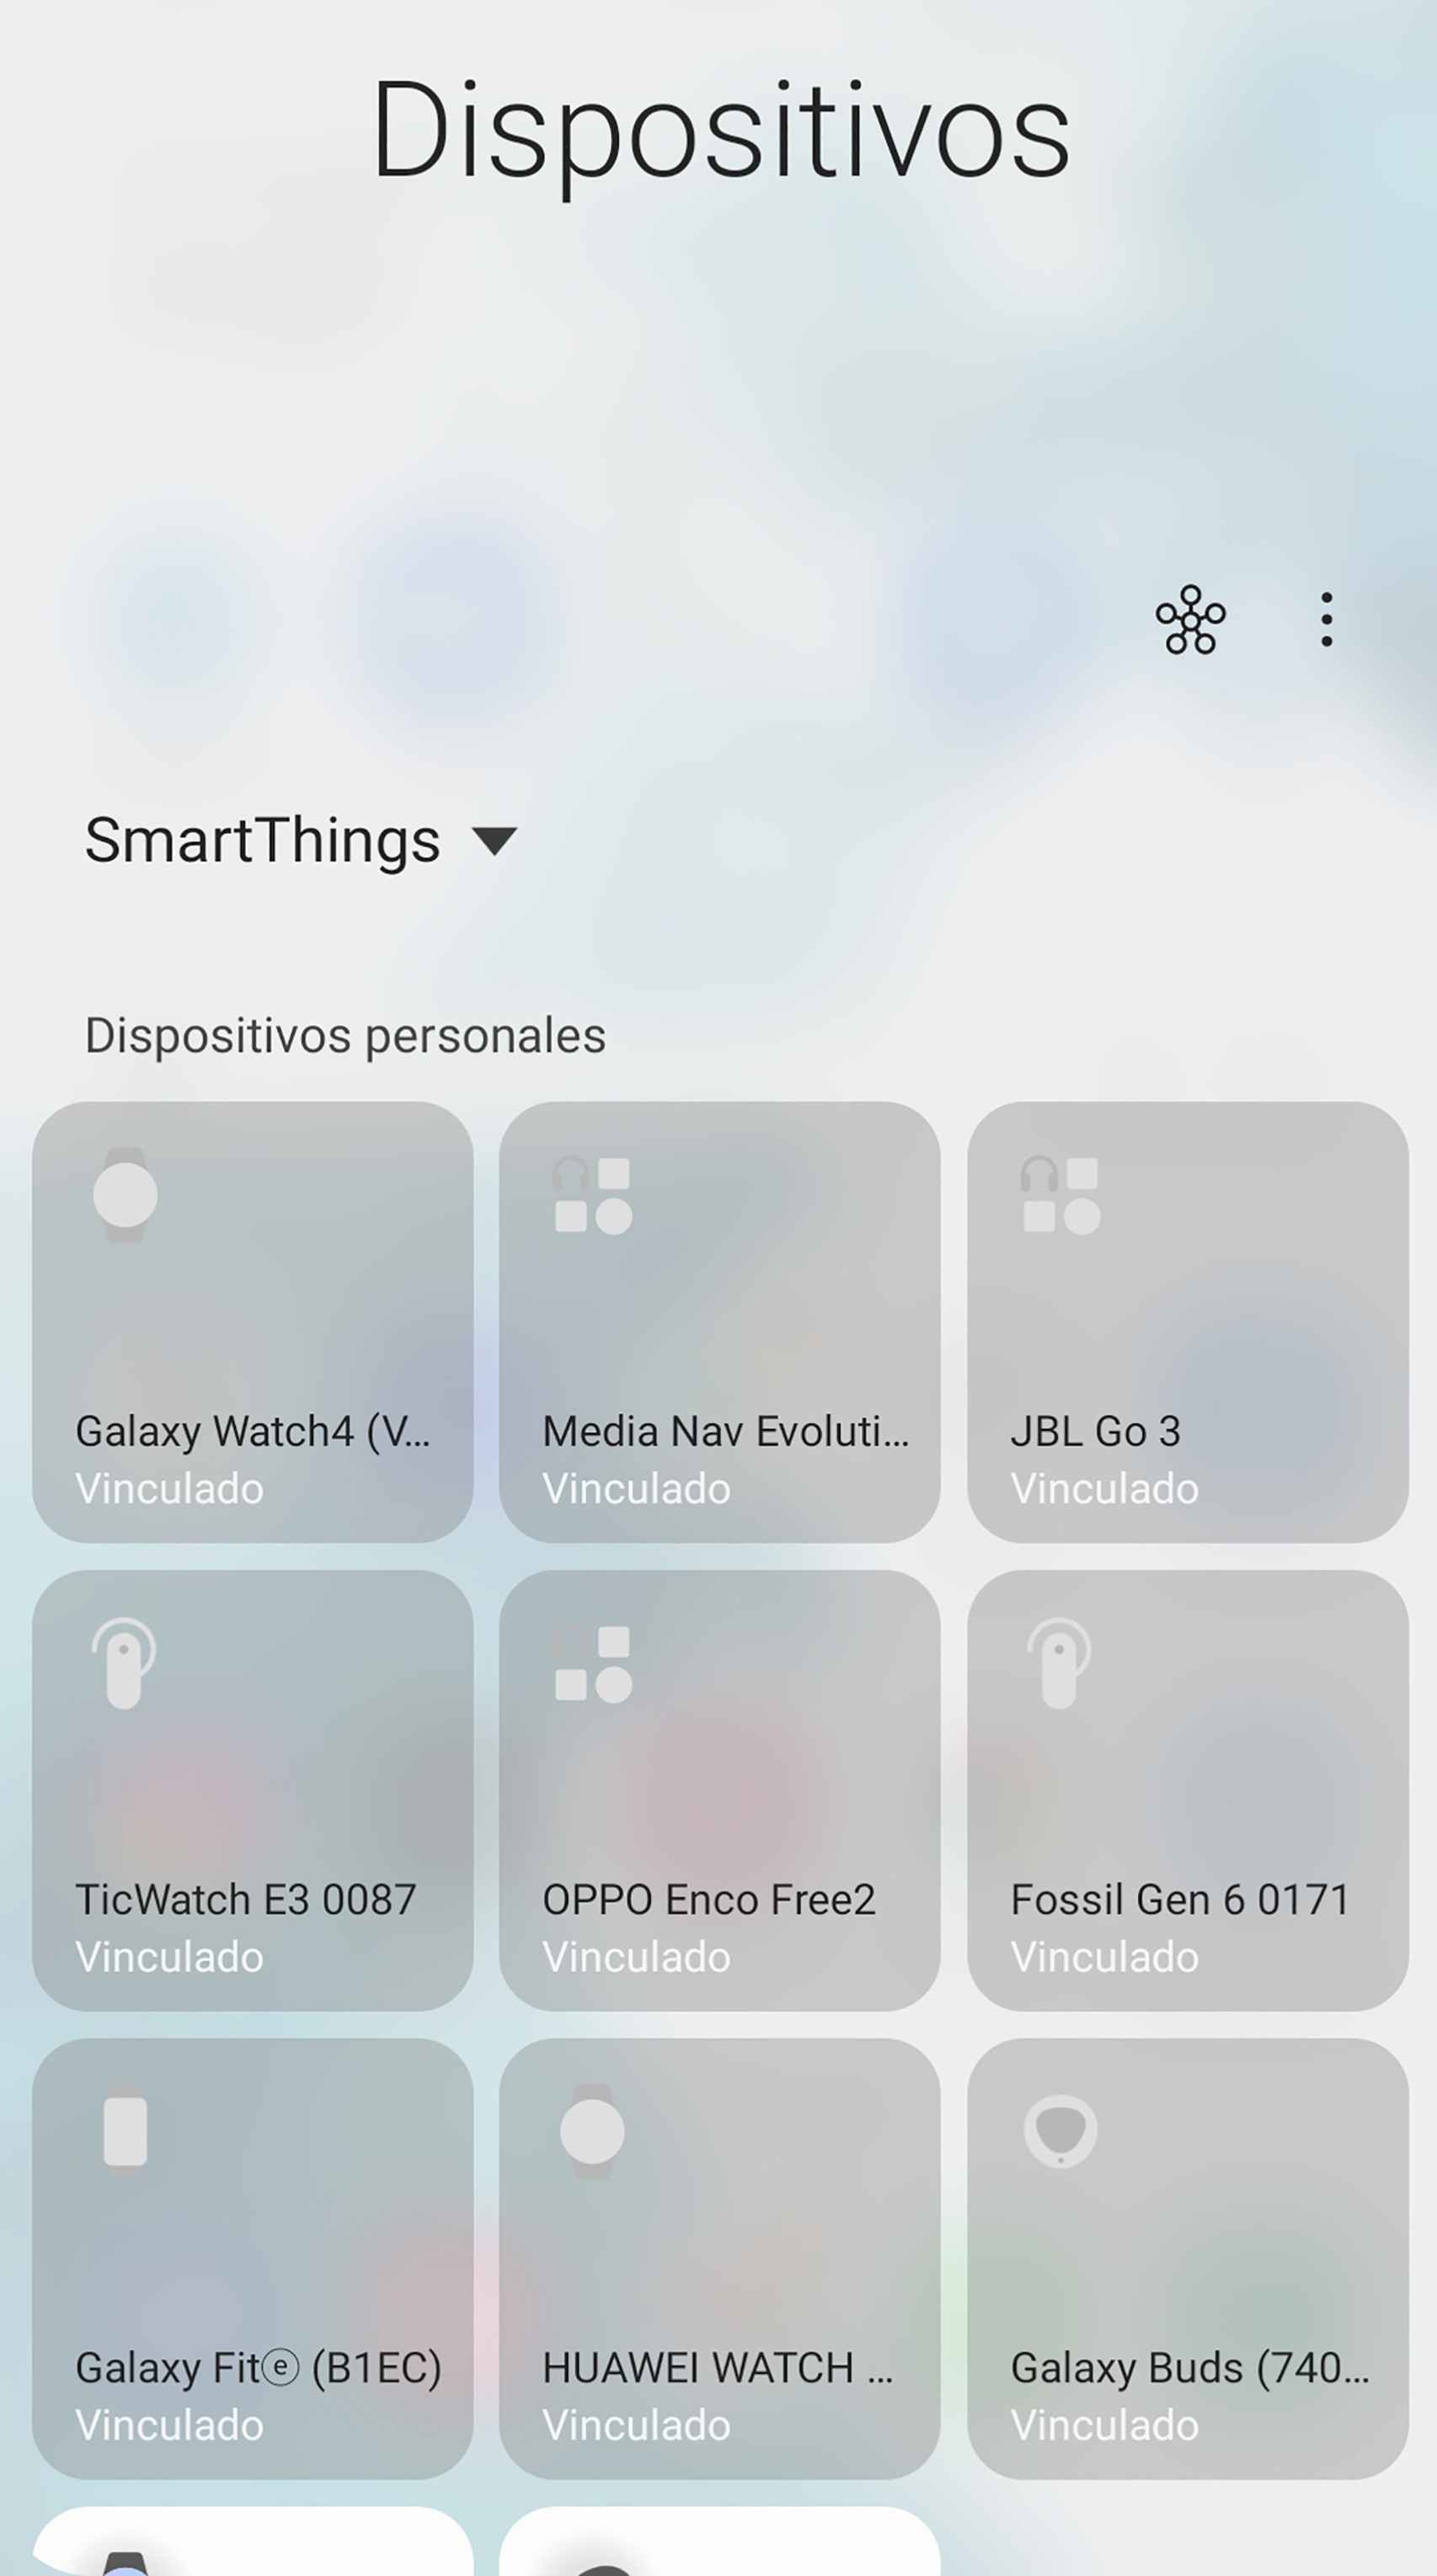 La interfaz de dispositivos conectados de SmartThings